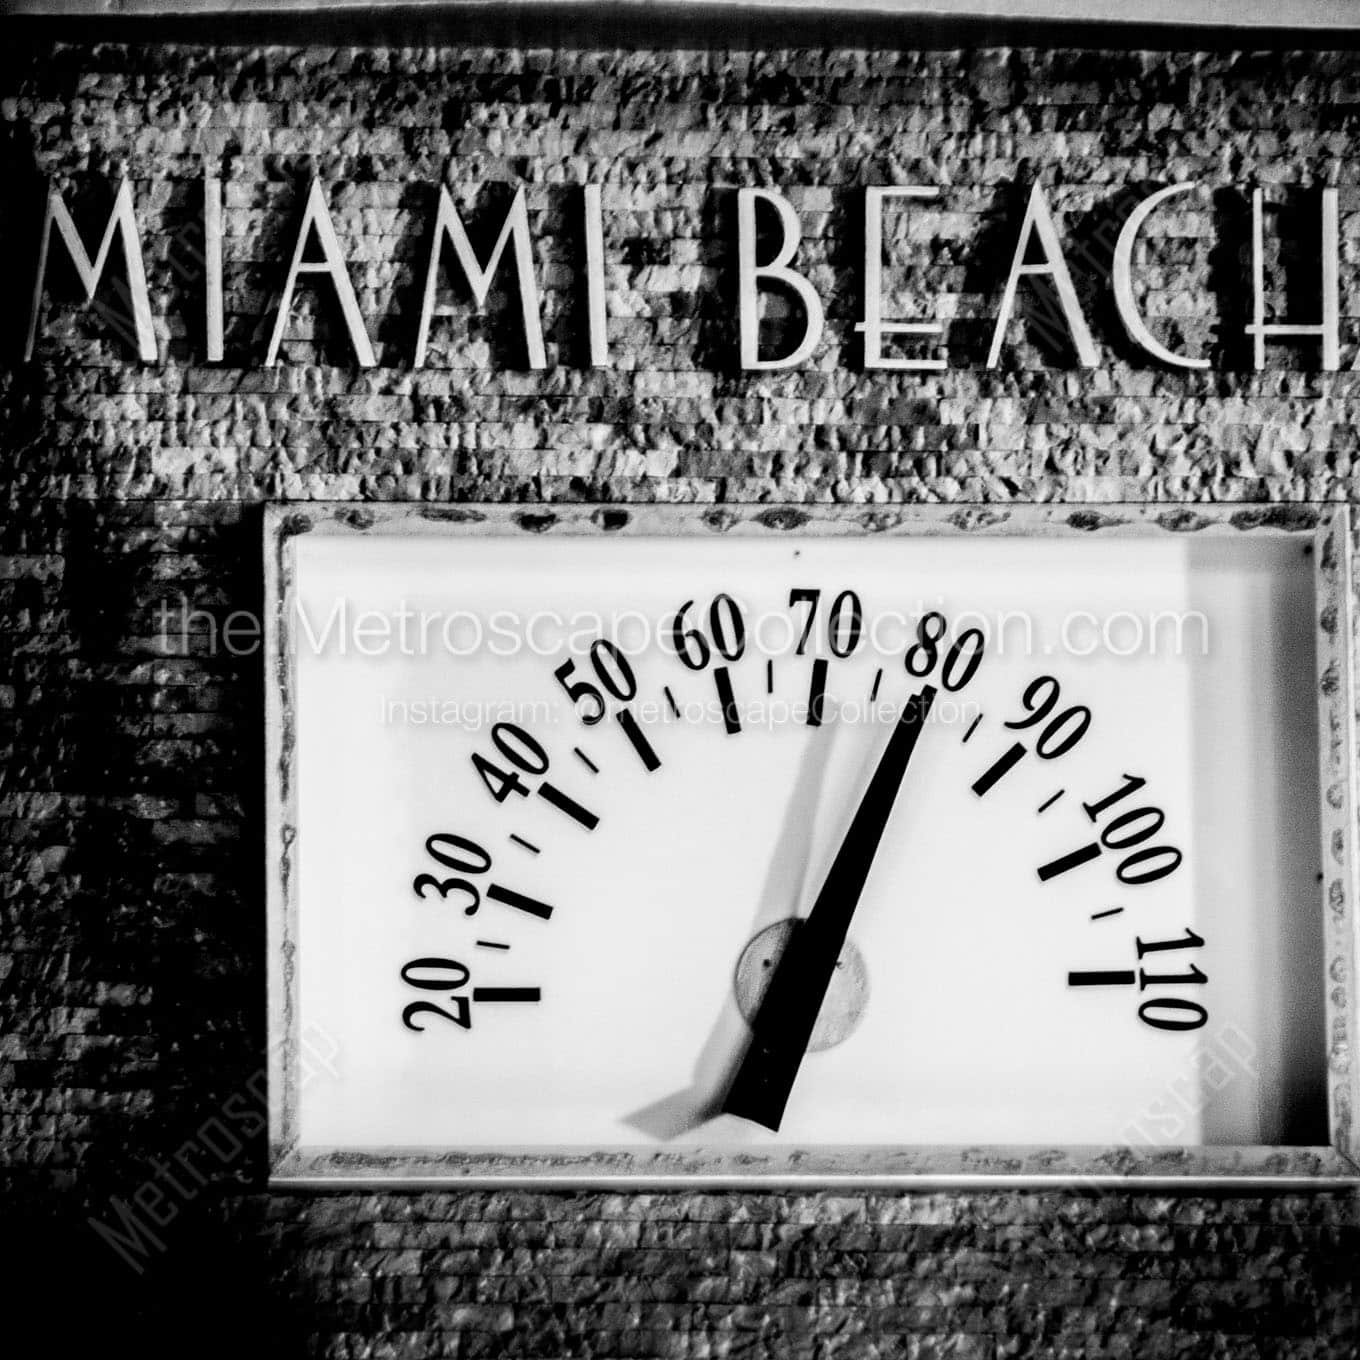 art deco miami beach temperature gauge Black & White Office Art